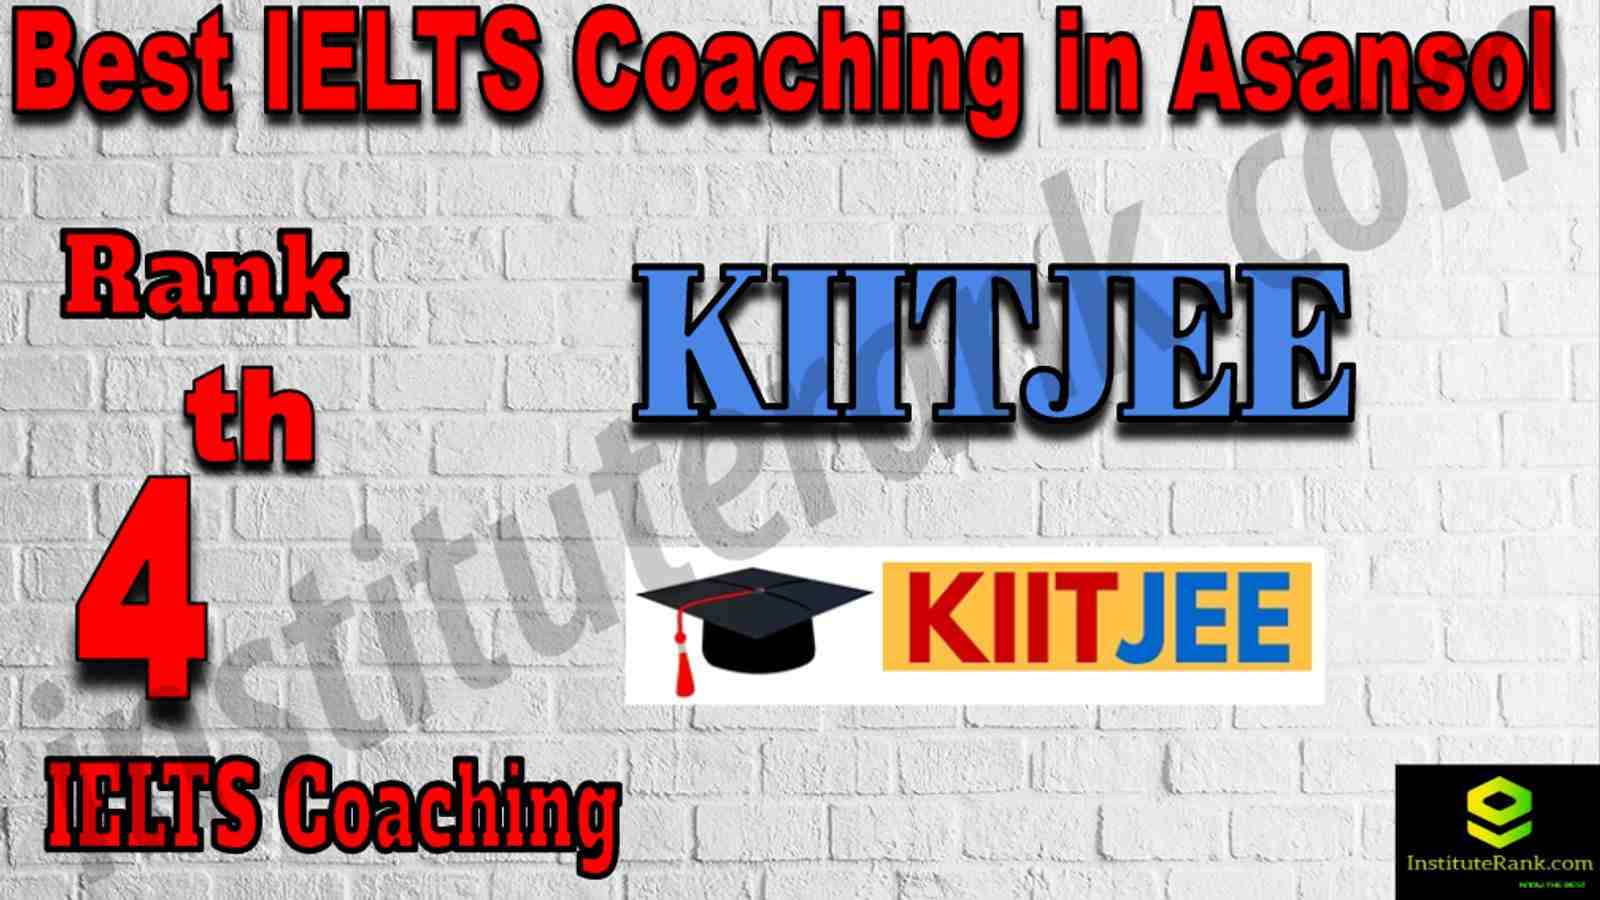 4th Best IELTS Coaching in Asansol